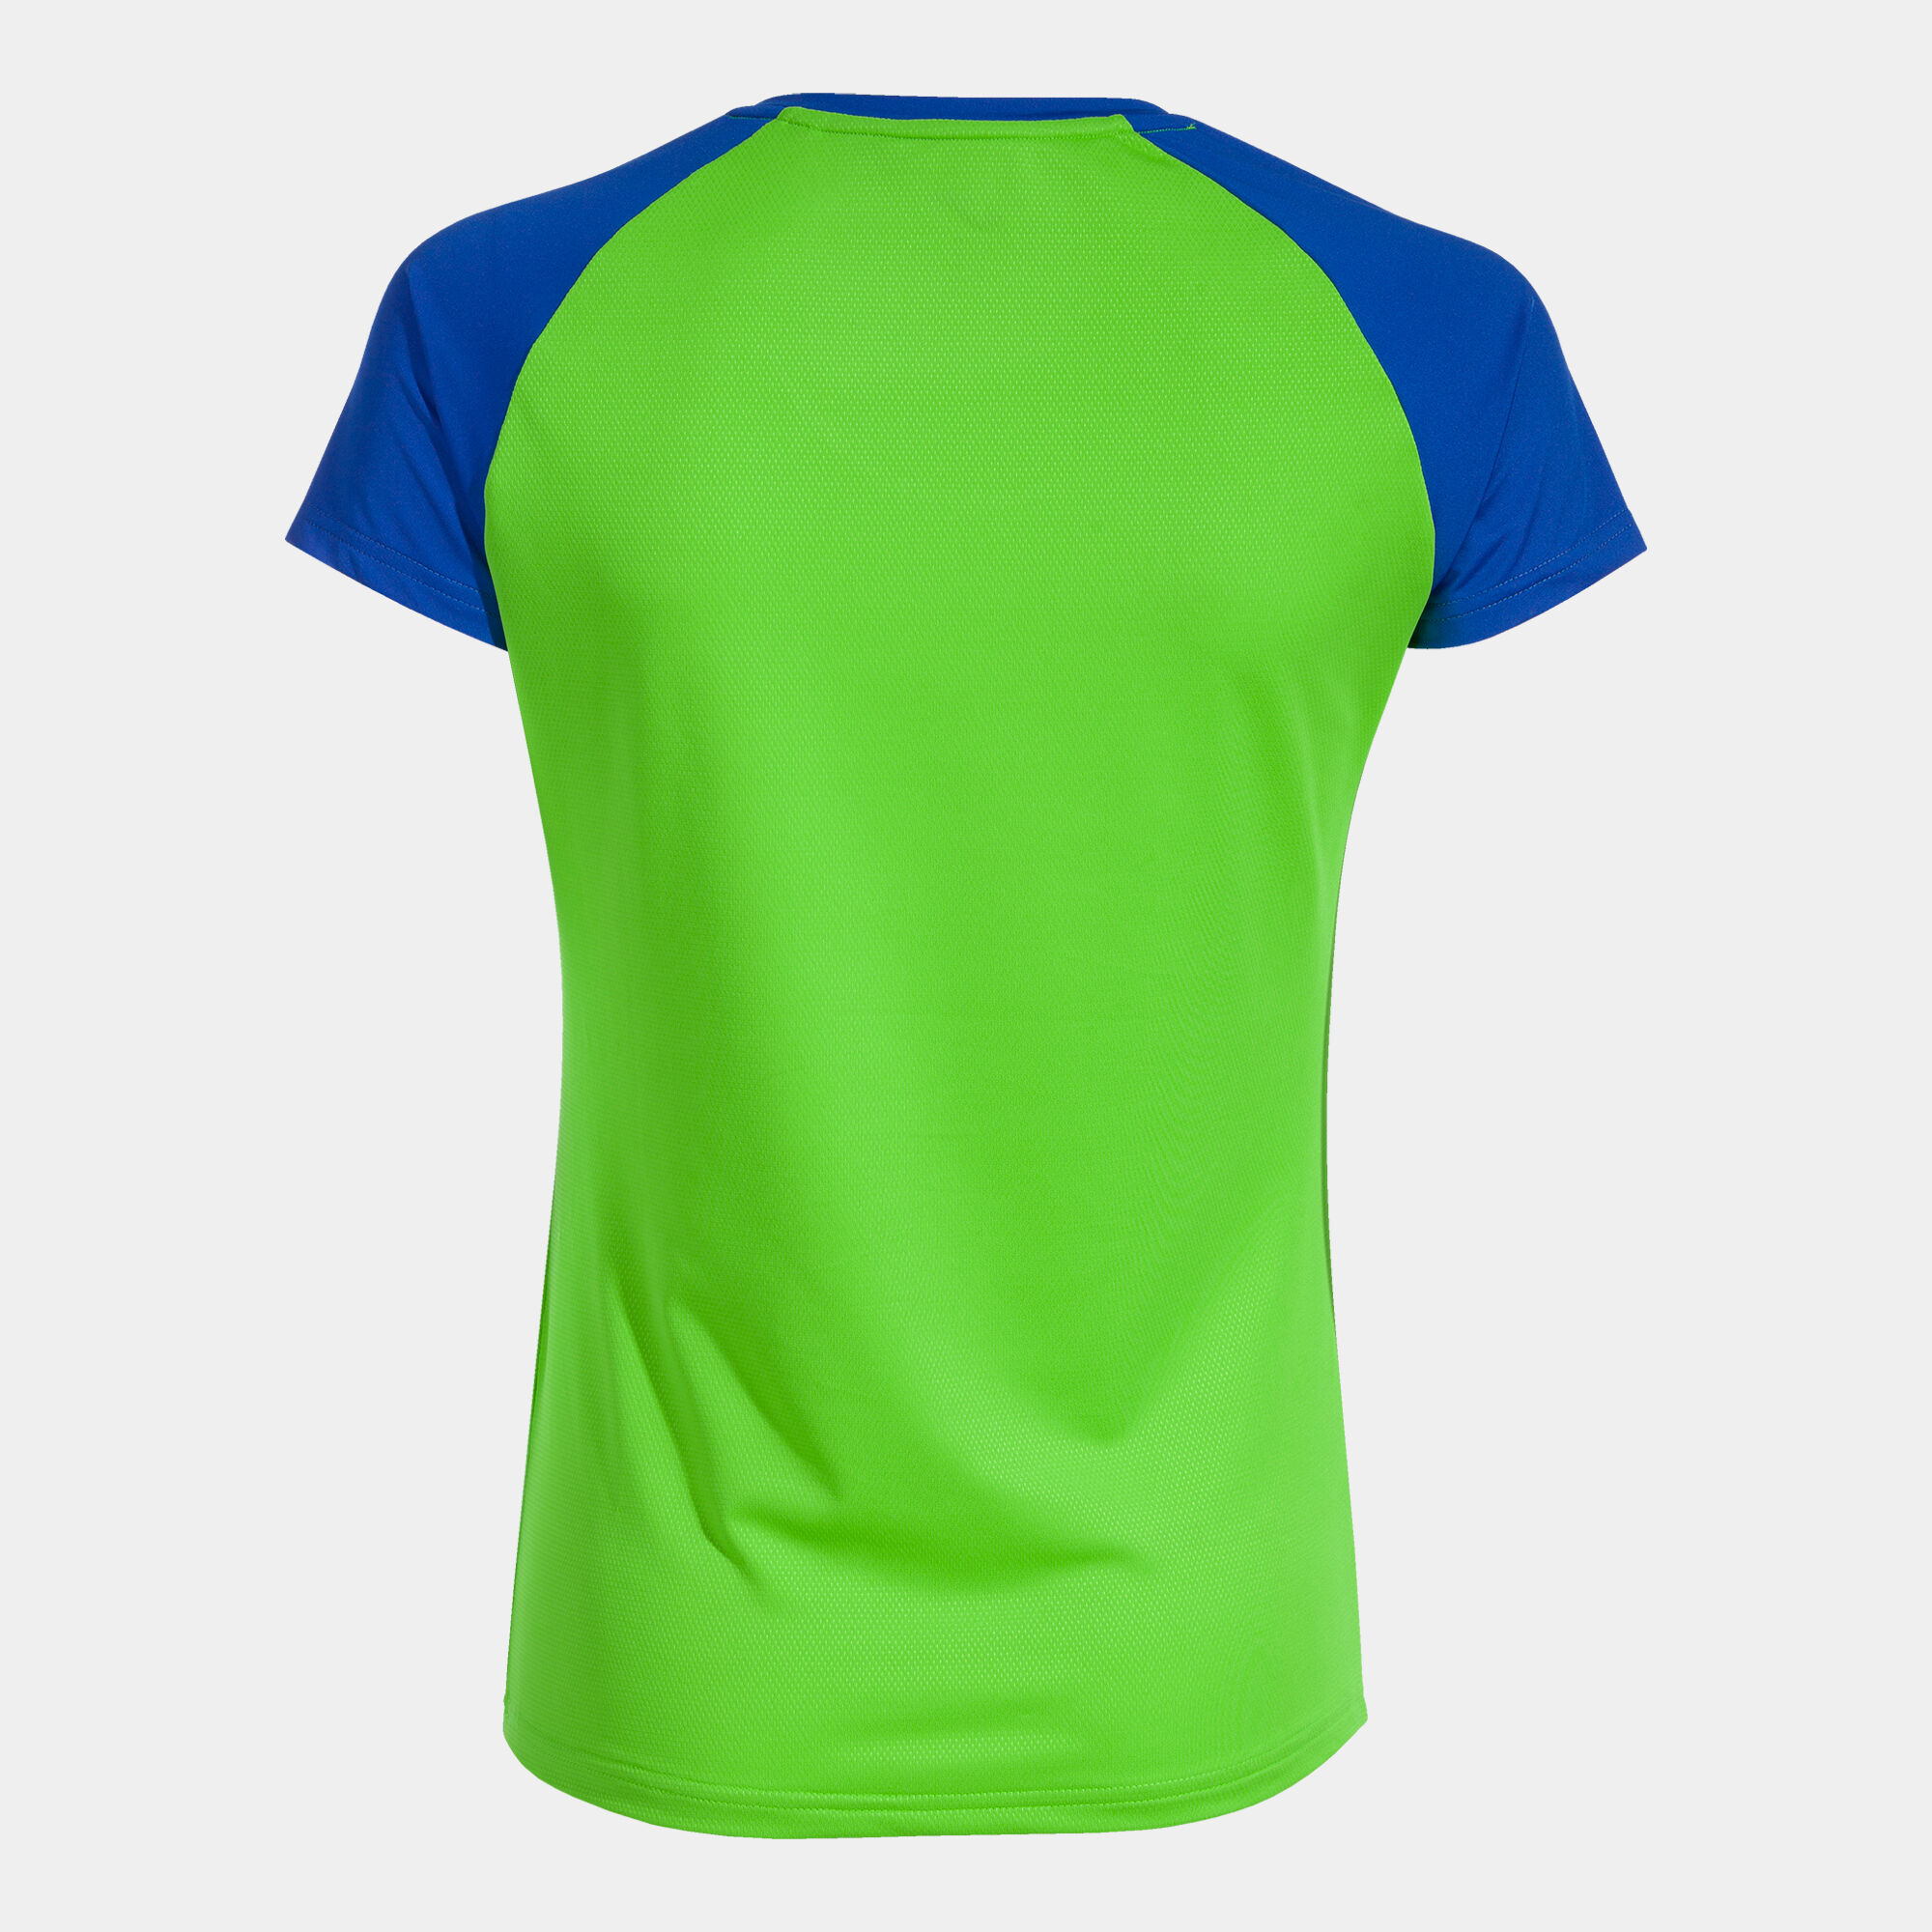 Koszulka z krótkim rękawem kobiety Elite X fluorescencyjny zielony niebieski royal